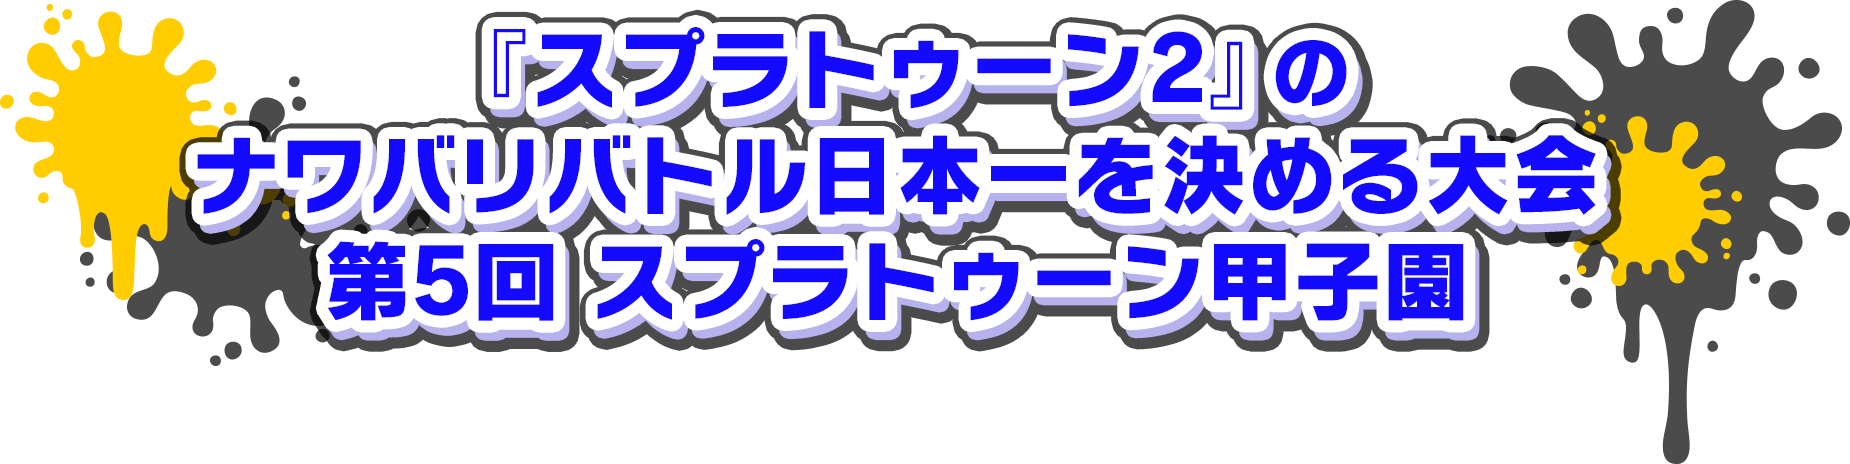 『スプラトゥーン2』のナワバリバトル日本一を決める大会「第5回 スプラトゥーン甲子園」!